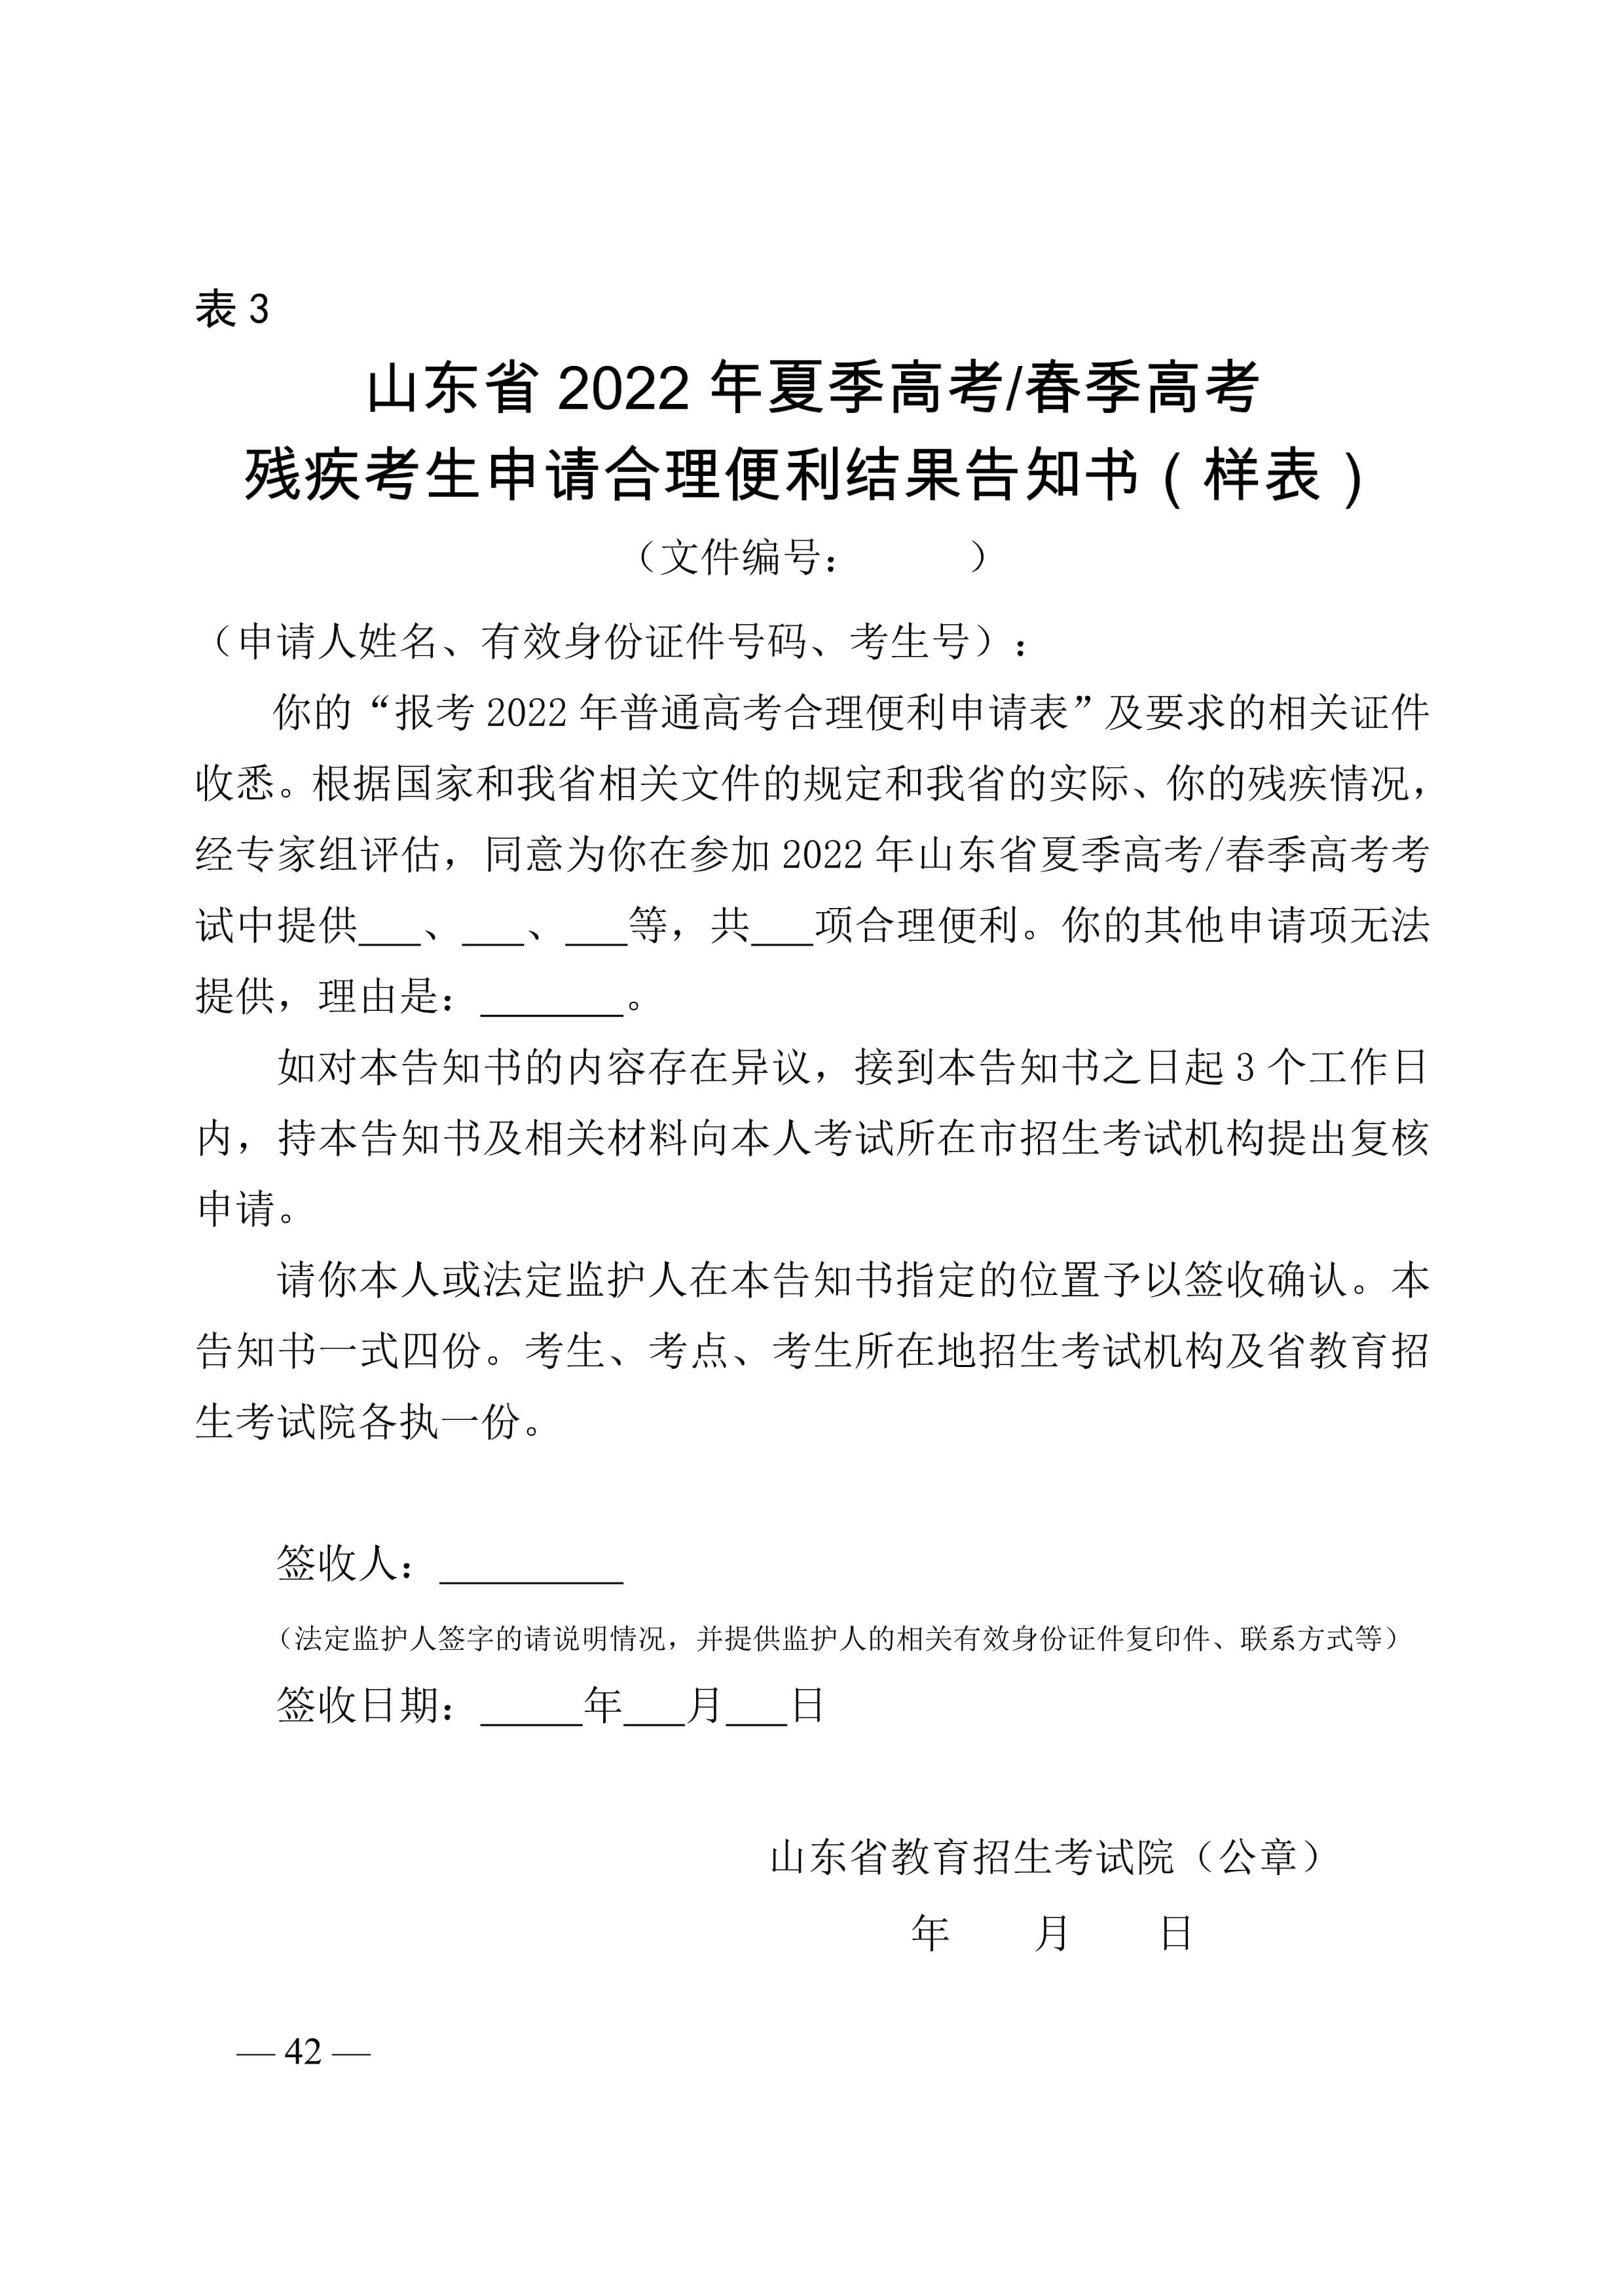 山東省教育招生考試院關于做好山東省2022年普通高等學校招生考試報名工作的通知